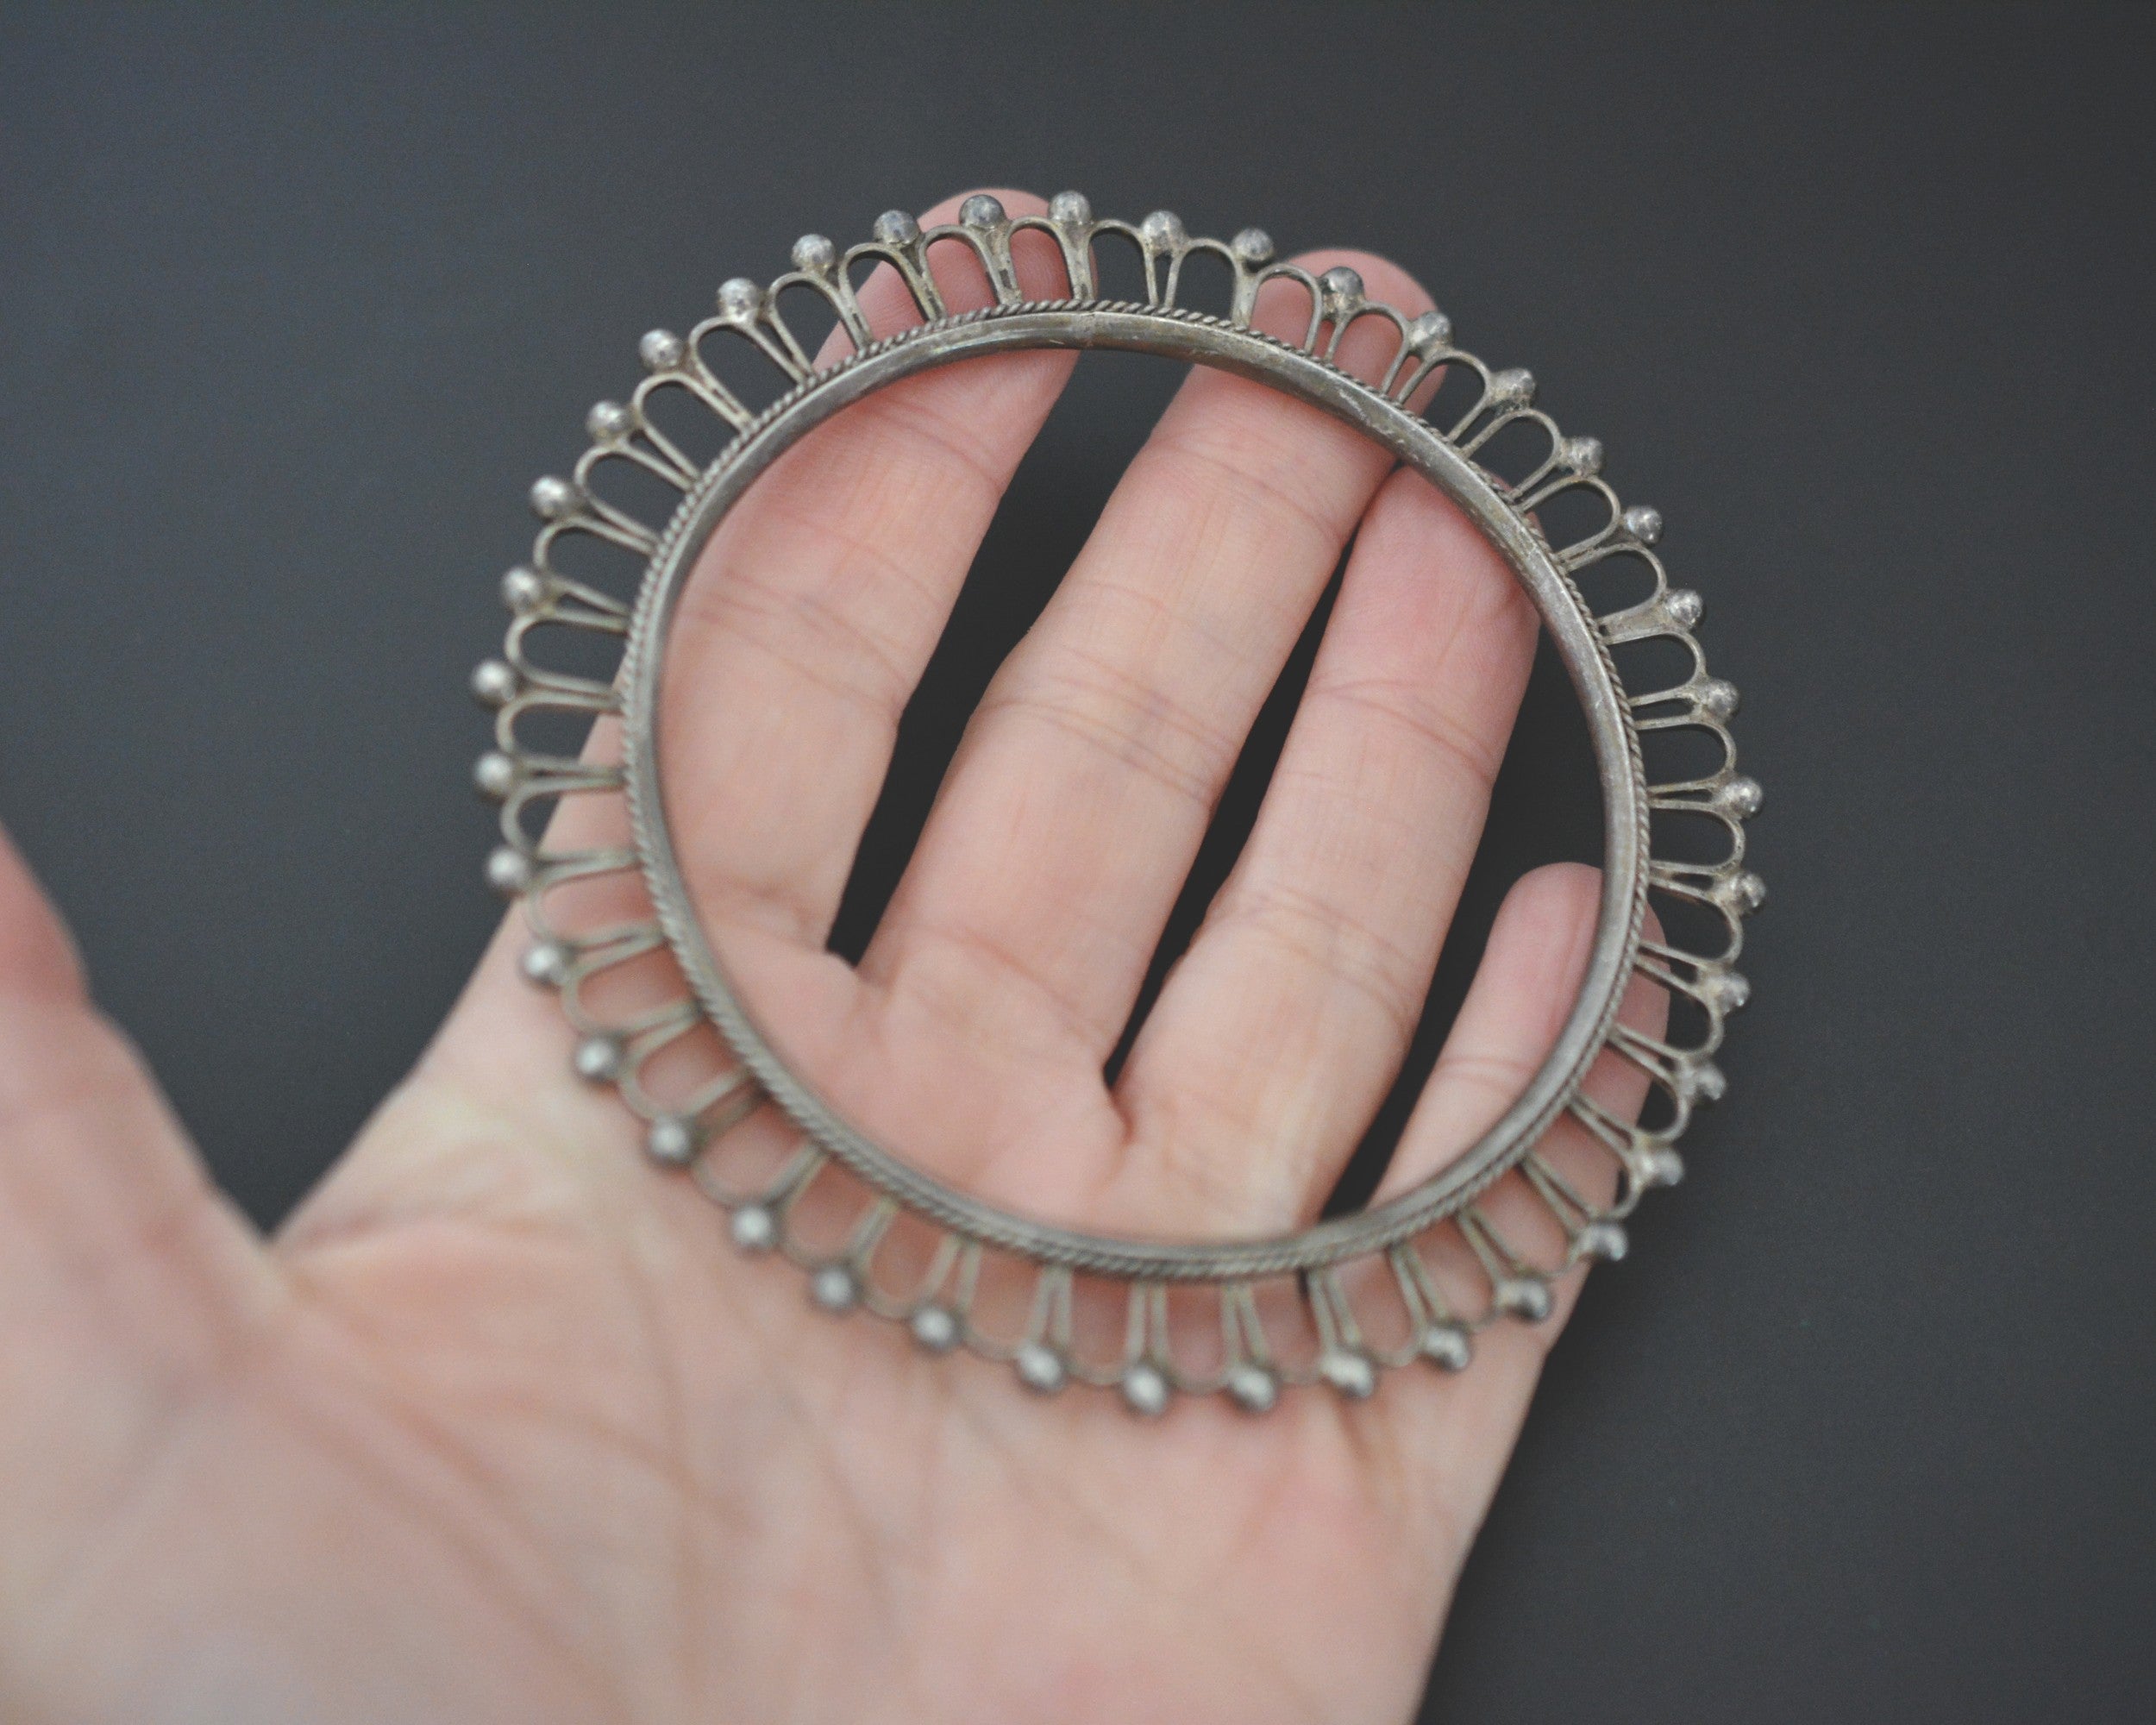 Rajasthani Silver Bangle Bracelet - Medium/Large